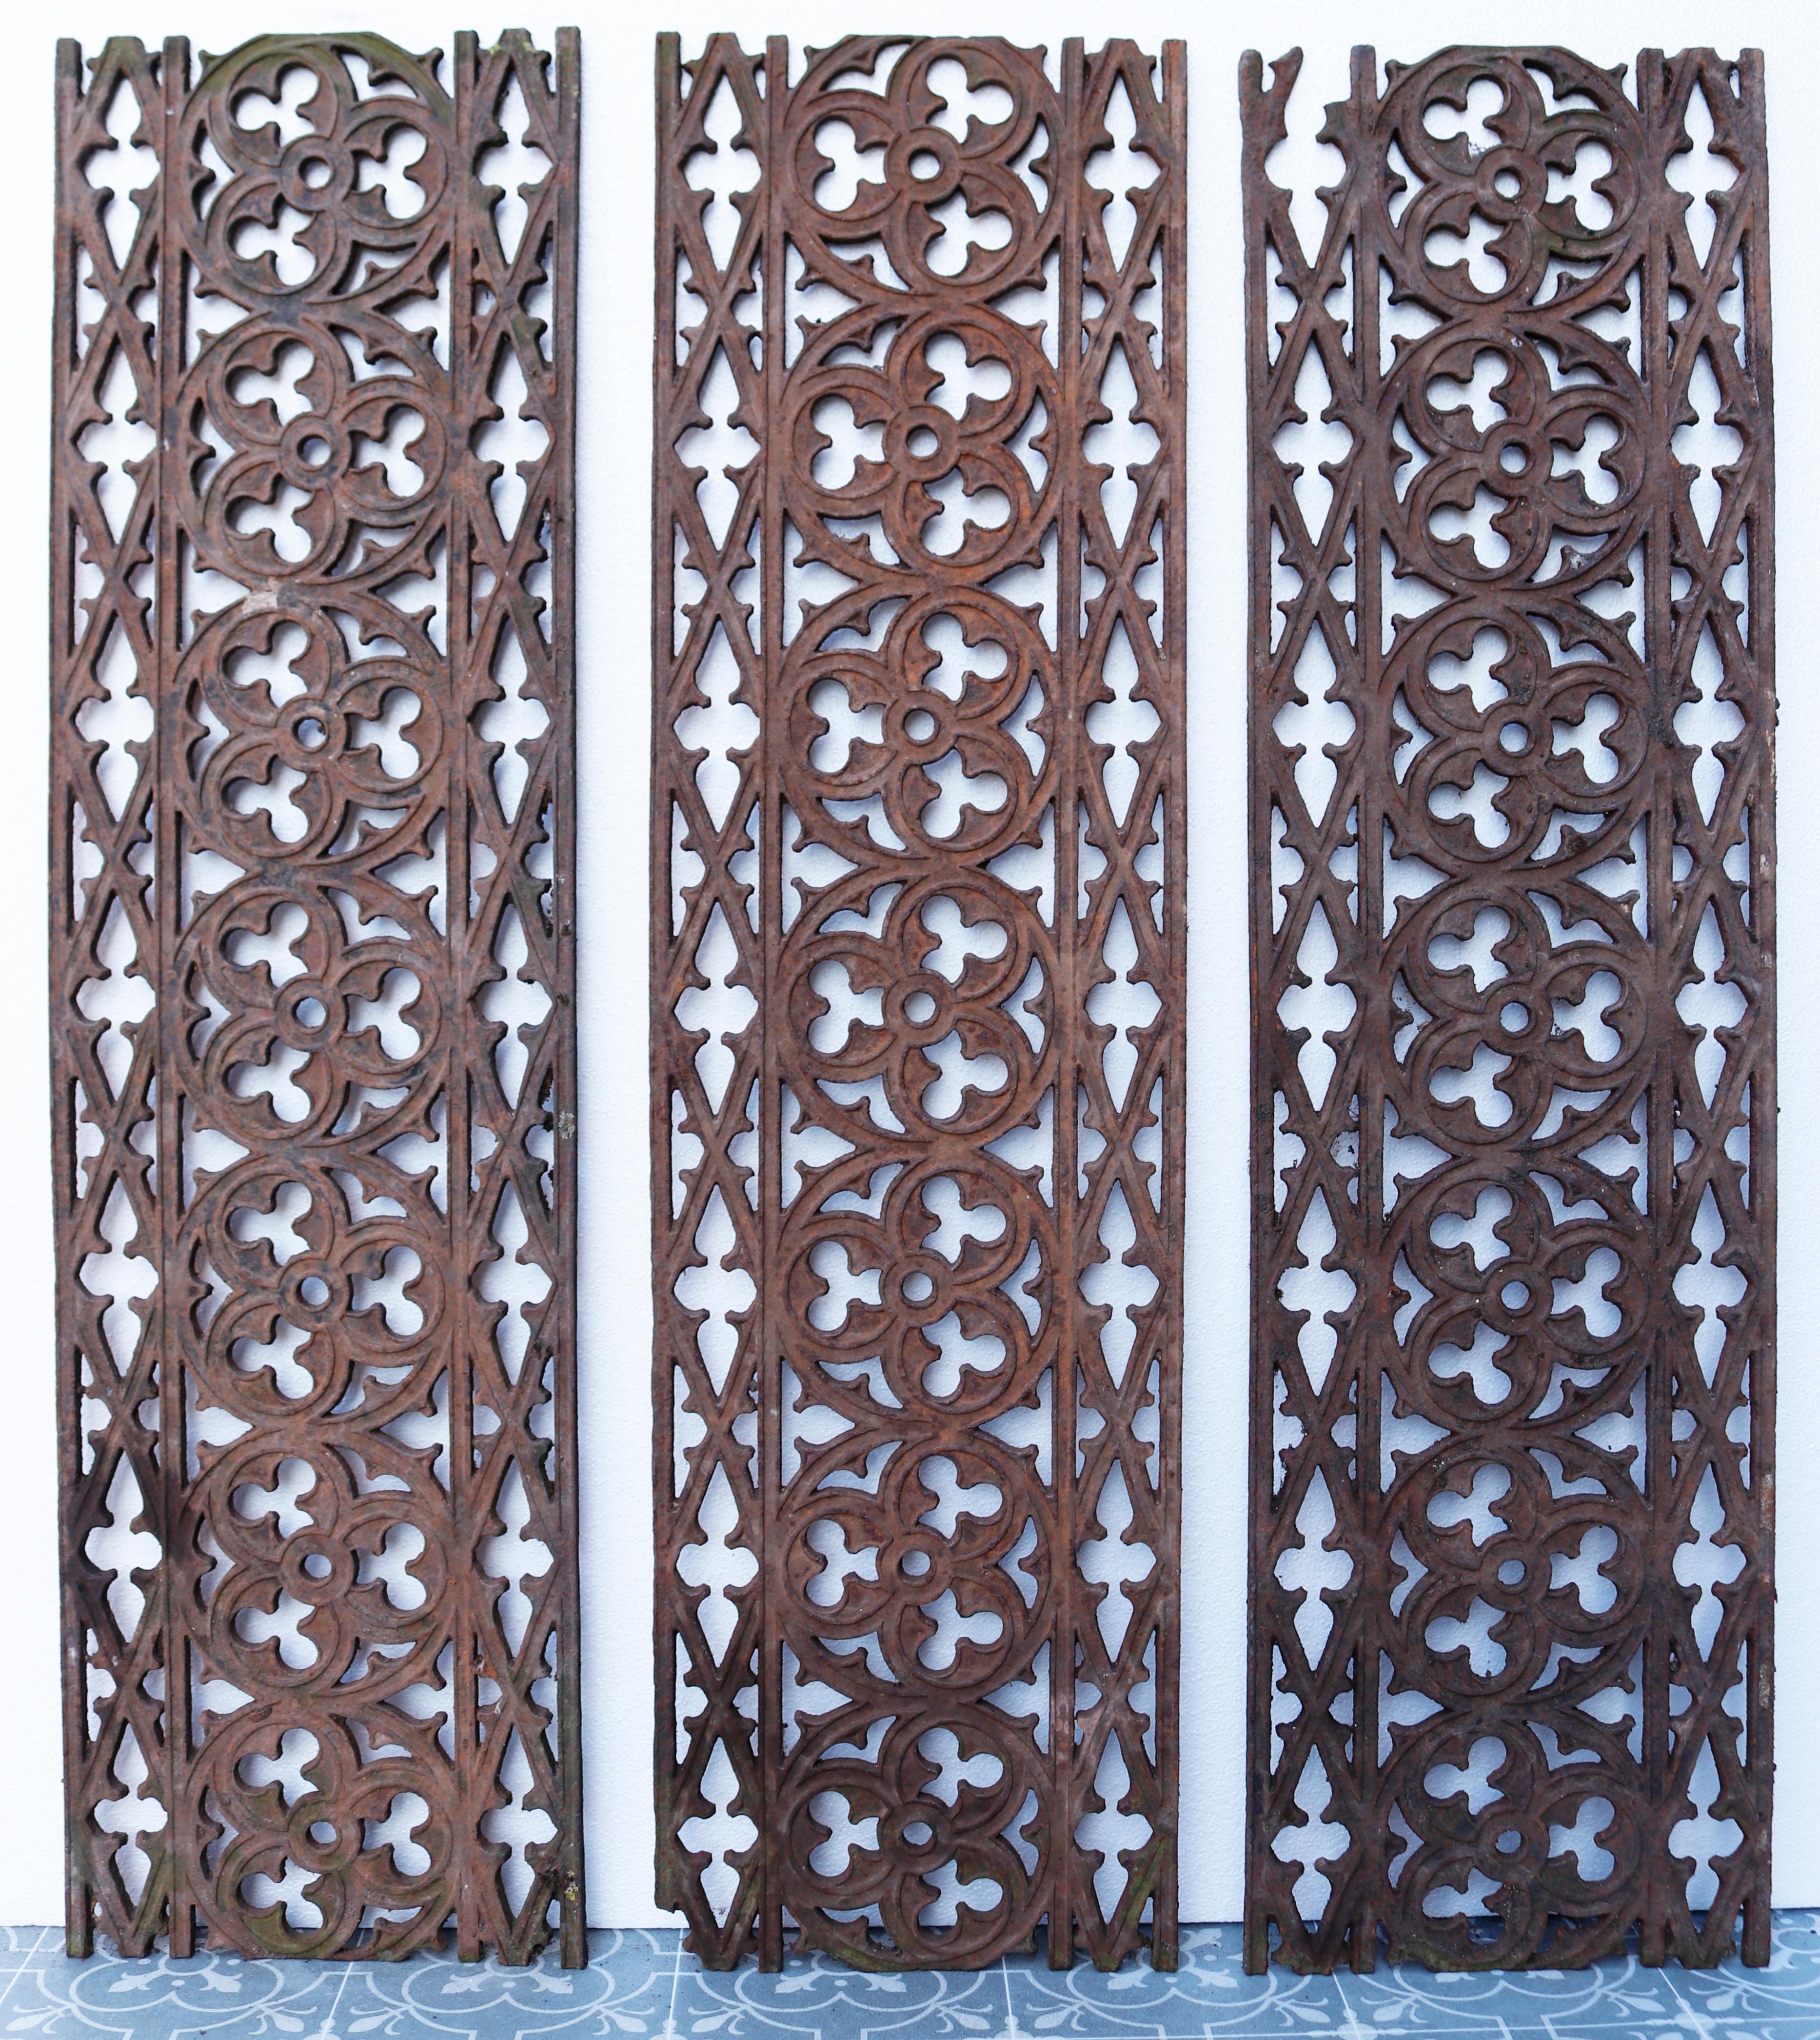 Eine große Menge von wiederhergestellten viktorianischen Bodengittern im gotischen Stil, CIRCA 1880.

Zusätzliche Abmessungen:

Längen

117 cm (x8)

96 cm (x3)

91 cm (x 1)

88cm ( x1)

67 cm (x1)

126 cm ( x1)

Breite 40,5

Tiefe 1 cm